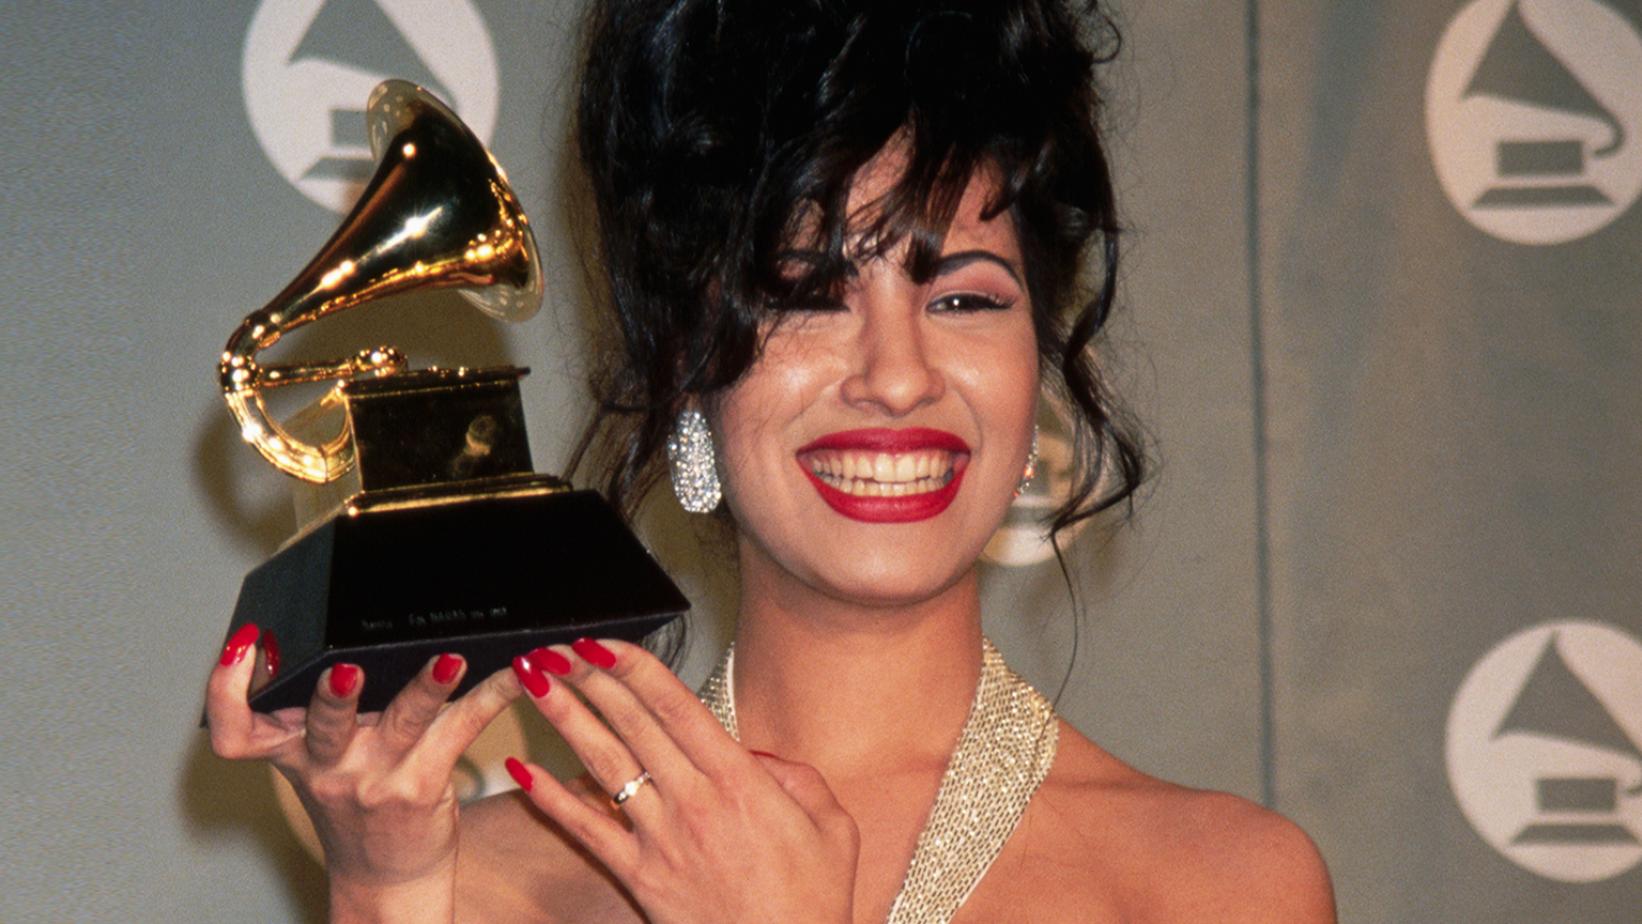 Selena Quintanilla, uma mulher branca de cabelo preto, está segurando seu gramofone dourado. Ela está de cabelo preso, com a franja no rosto, brincos brilhantes e unhas grandes pintadas de vermelho. Ela está sorrindo, com um batom vermelho e a alça de seu vestido é brilhante. Na mão em que está segurando o Grammy, ela usa um anel prata.